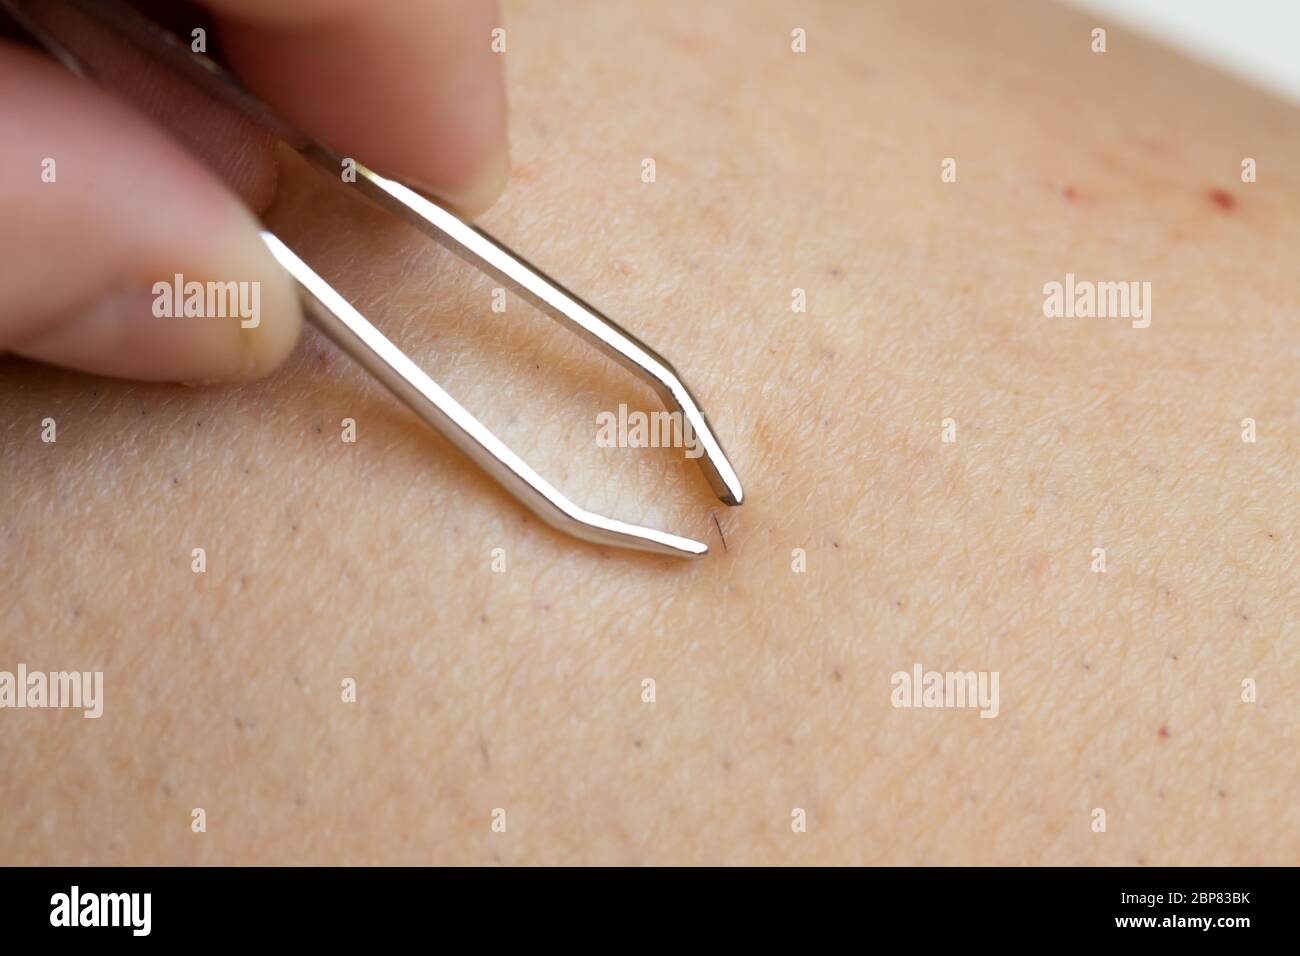 Entfernen eingewachsene Haare mit Pinzette nach dem Rasieren Beine  Stockfotografie - Alamy